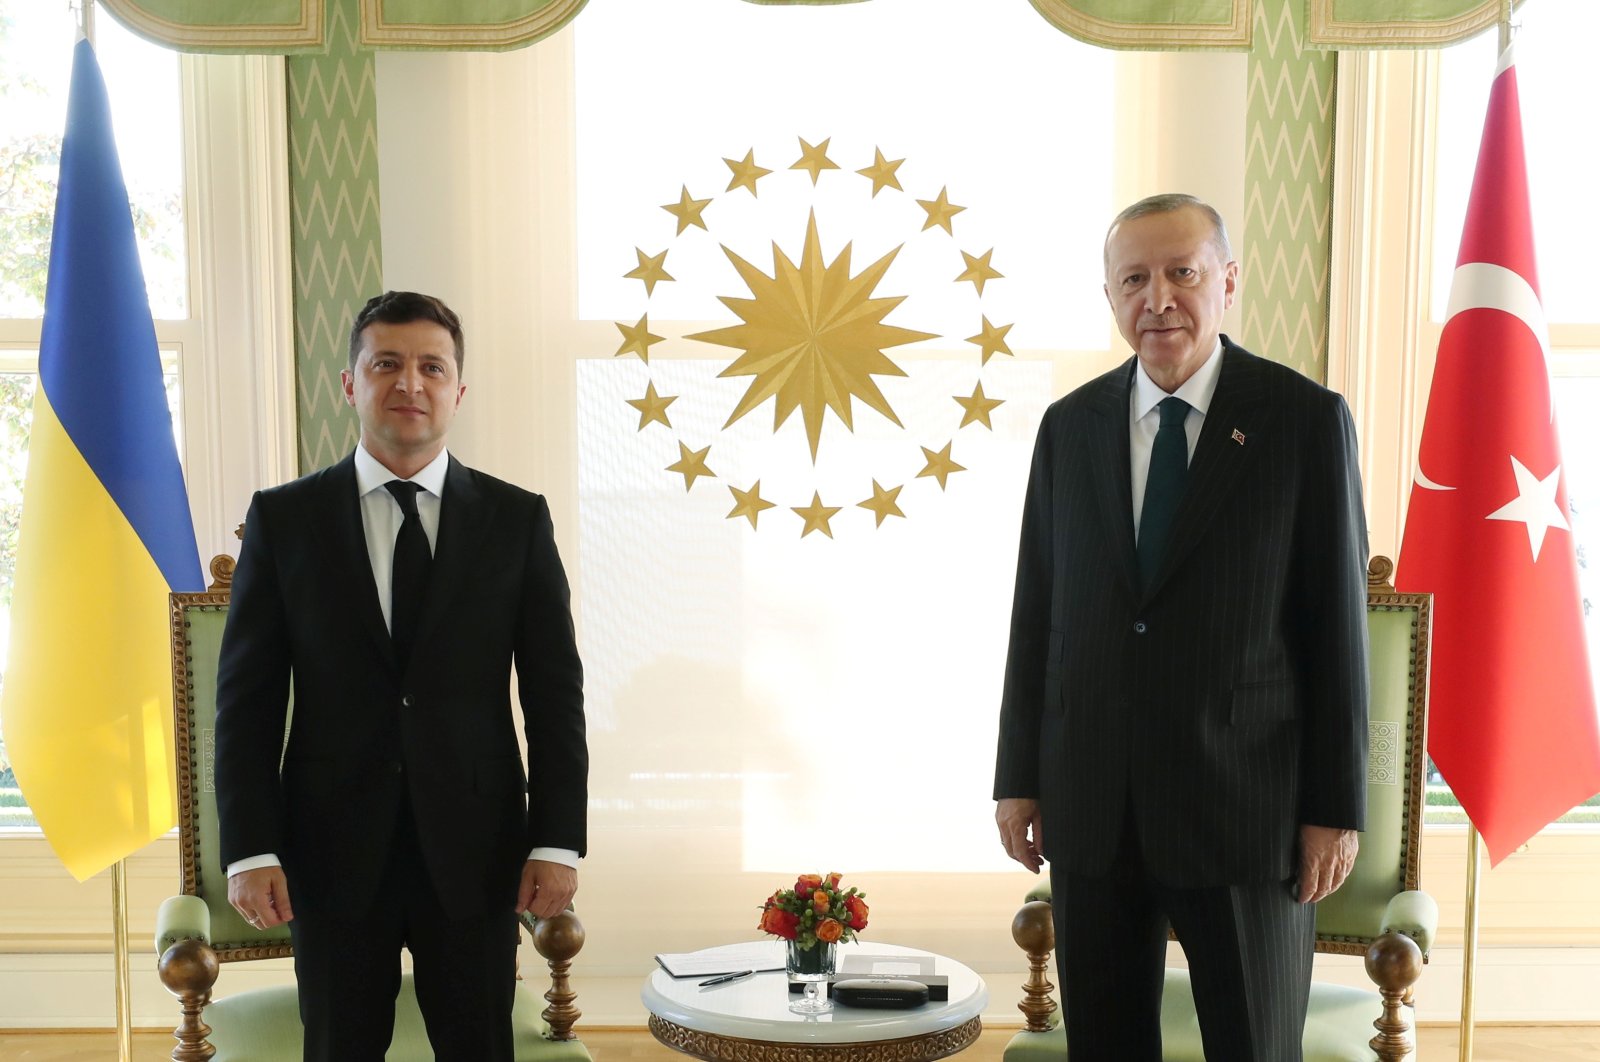 Erdoğan, Ukraine’s Zelenskyy discuss relations in phone call